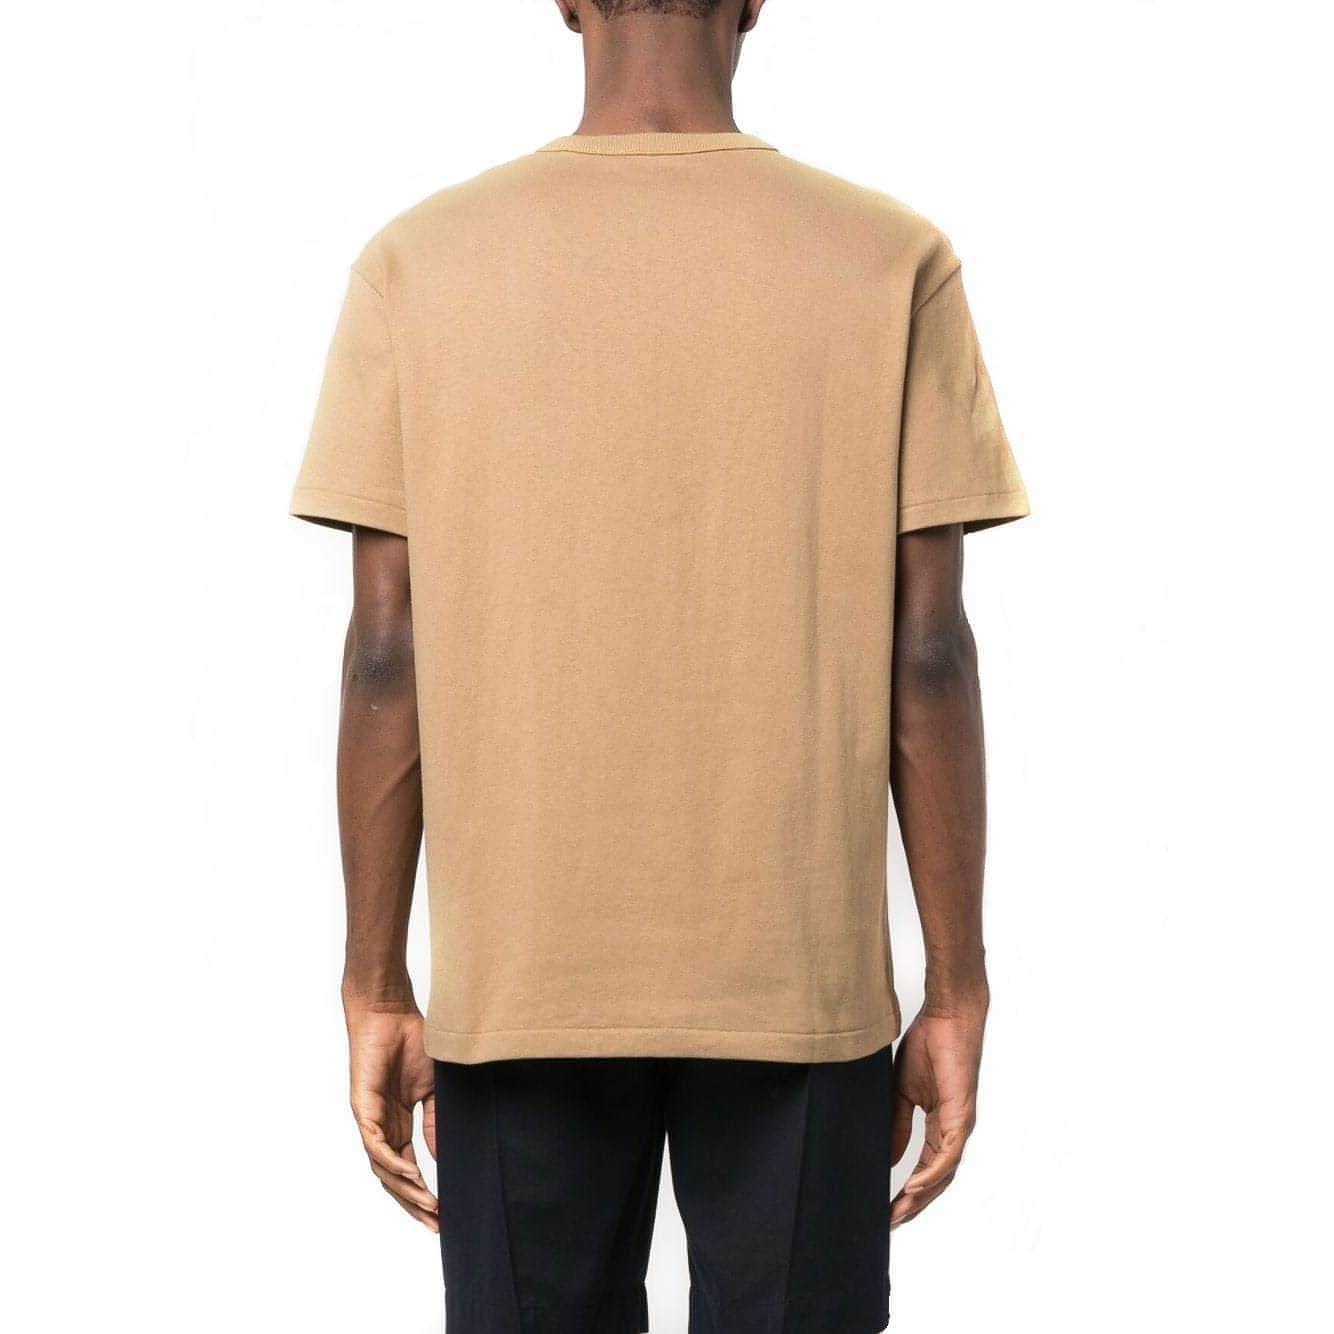 POLO RALPH LAUREN vyriški šviesūs marškinėliai Short sleeve t-shirt